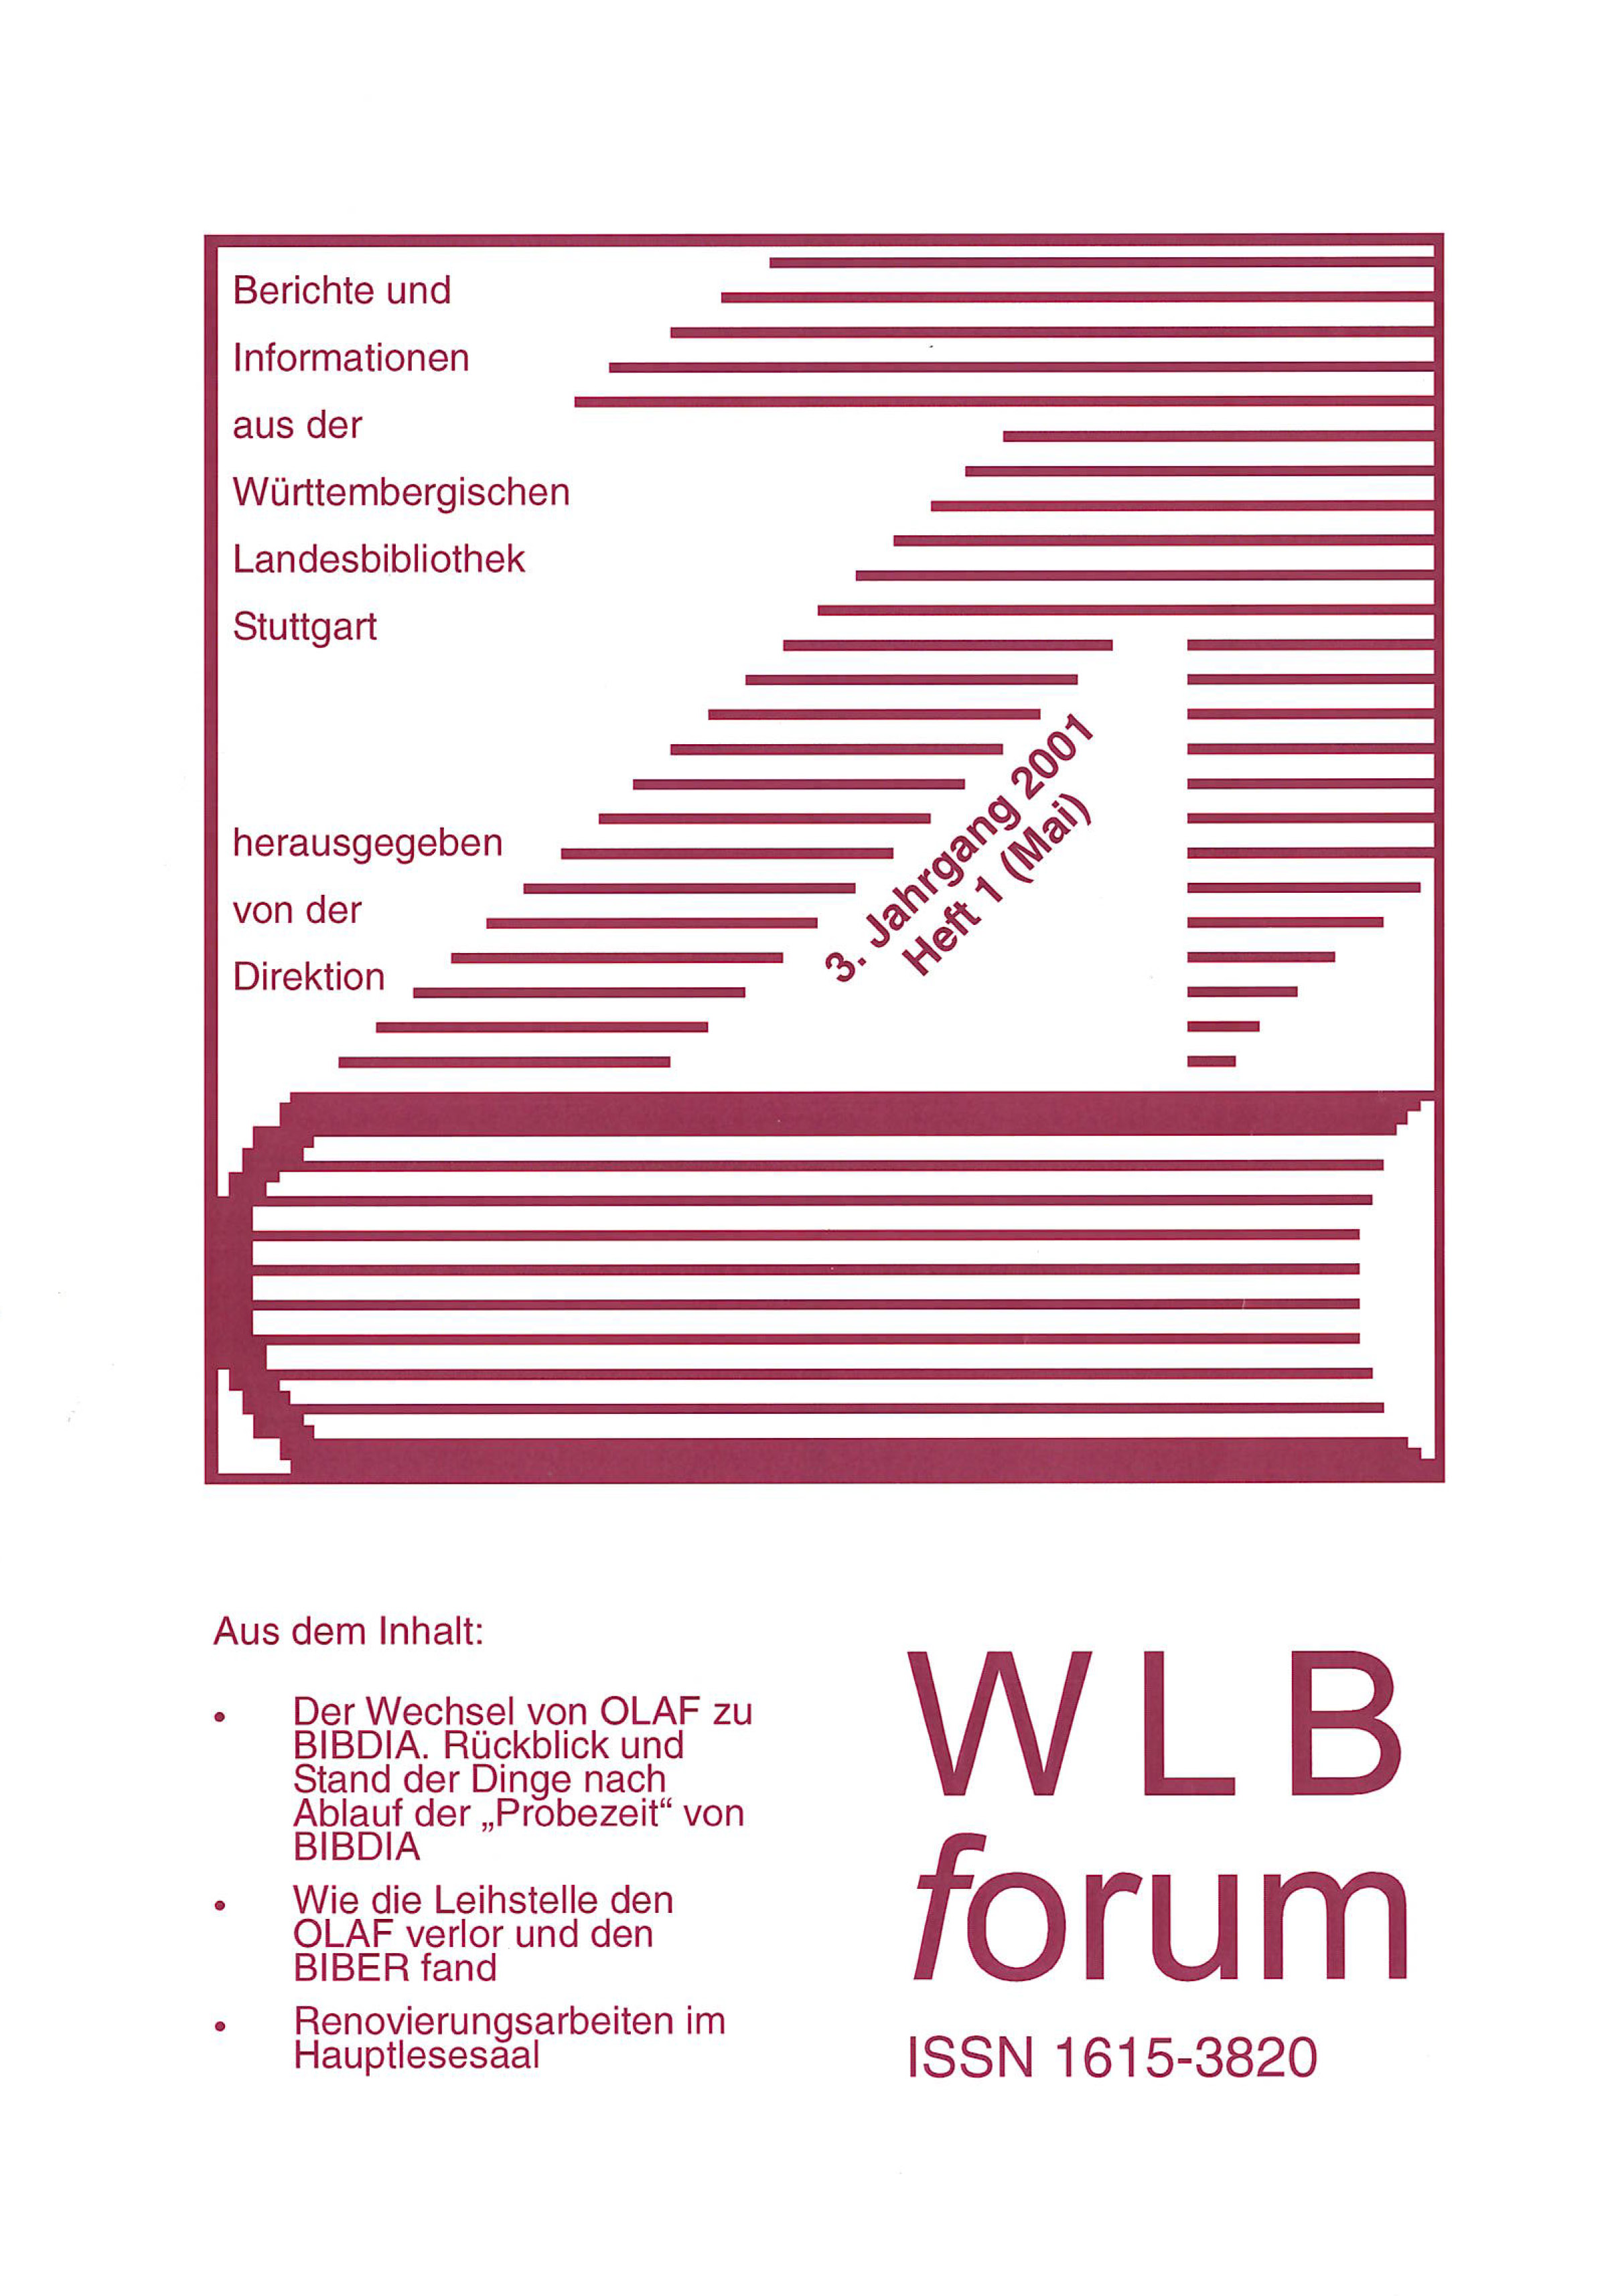                     Ansehen Bd. 3 Nr. 1 (2001): WLBforum
                